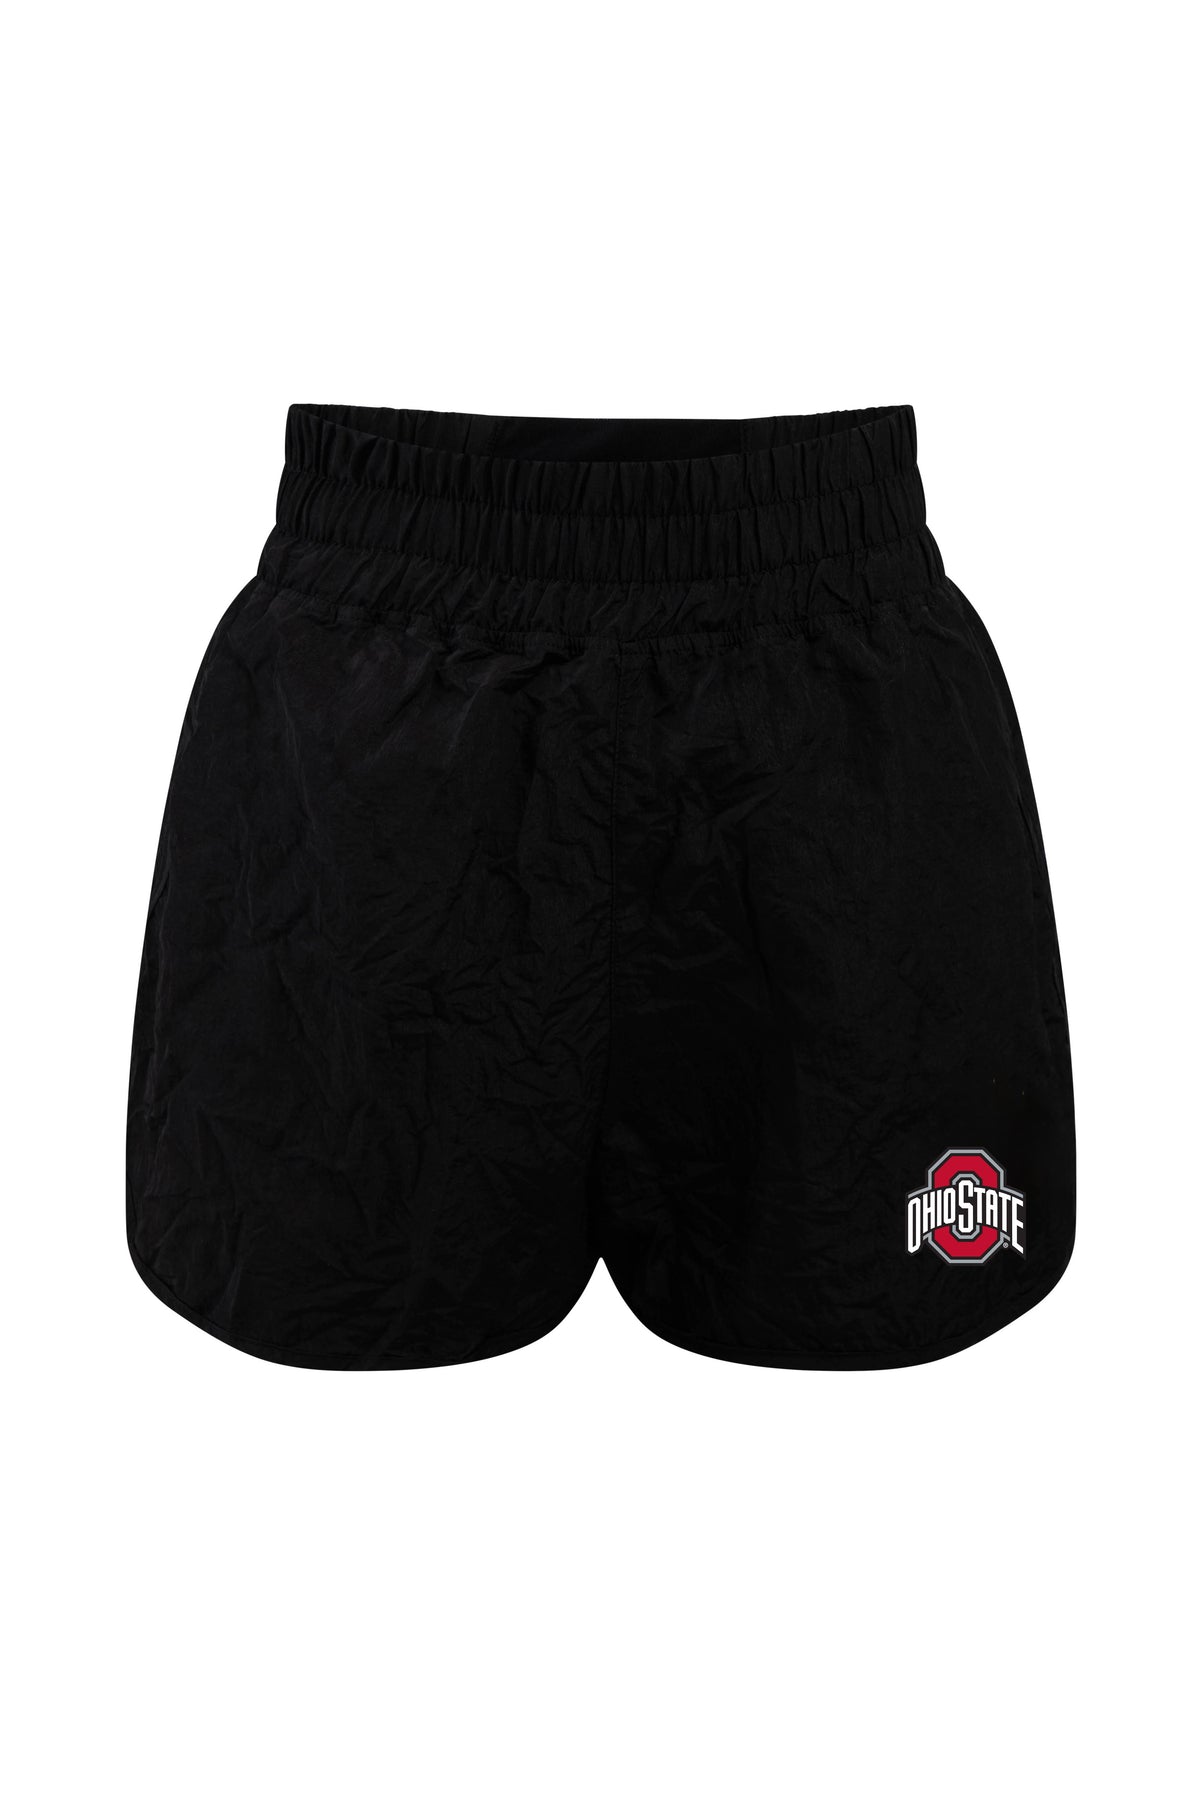 Ohio State University Boxer Short